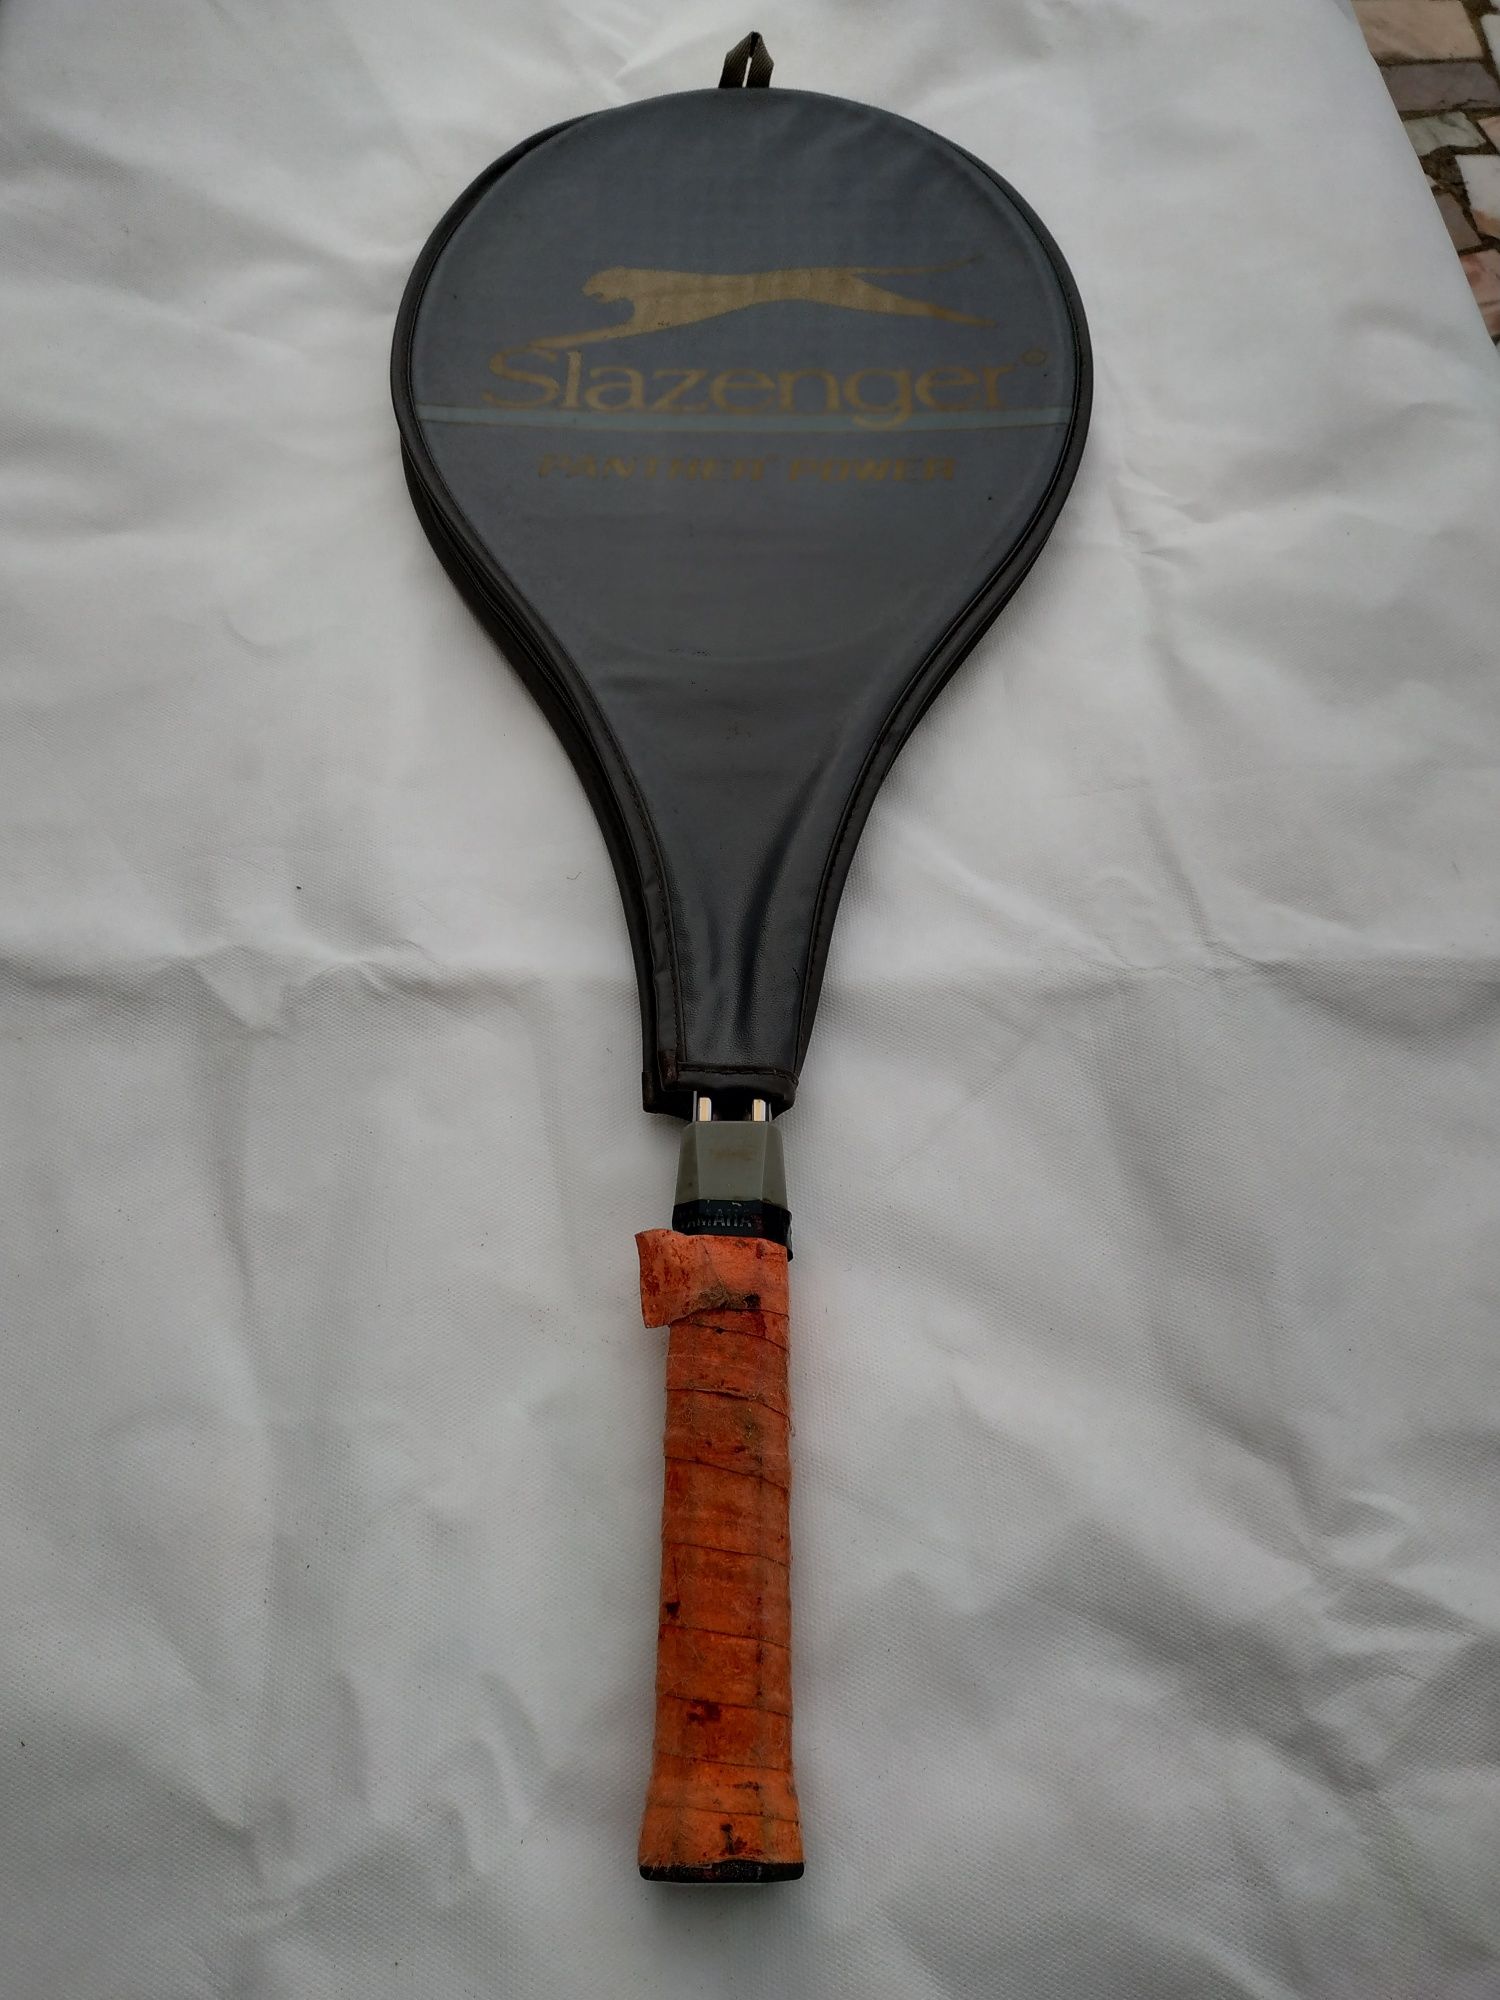 Raquete ténis Slazenger com capa de proteção